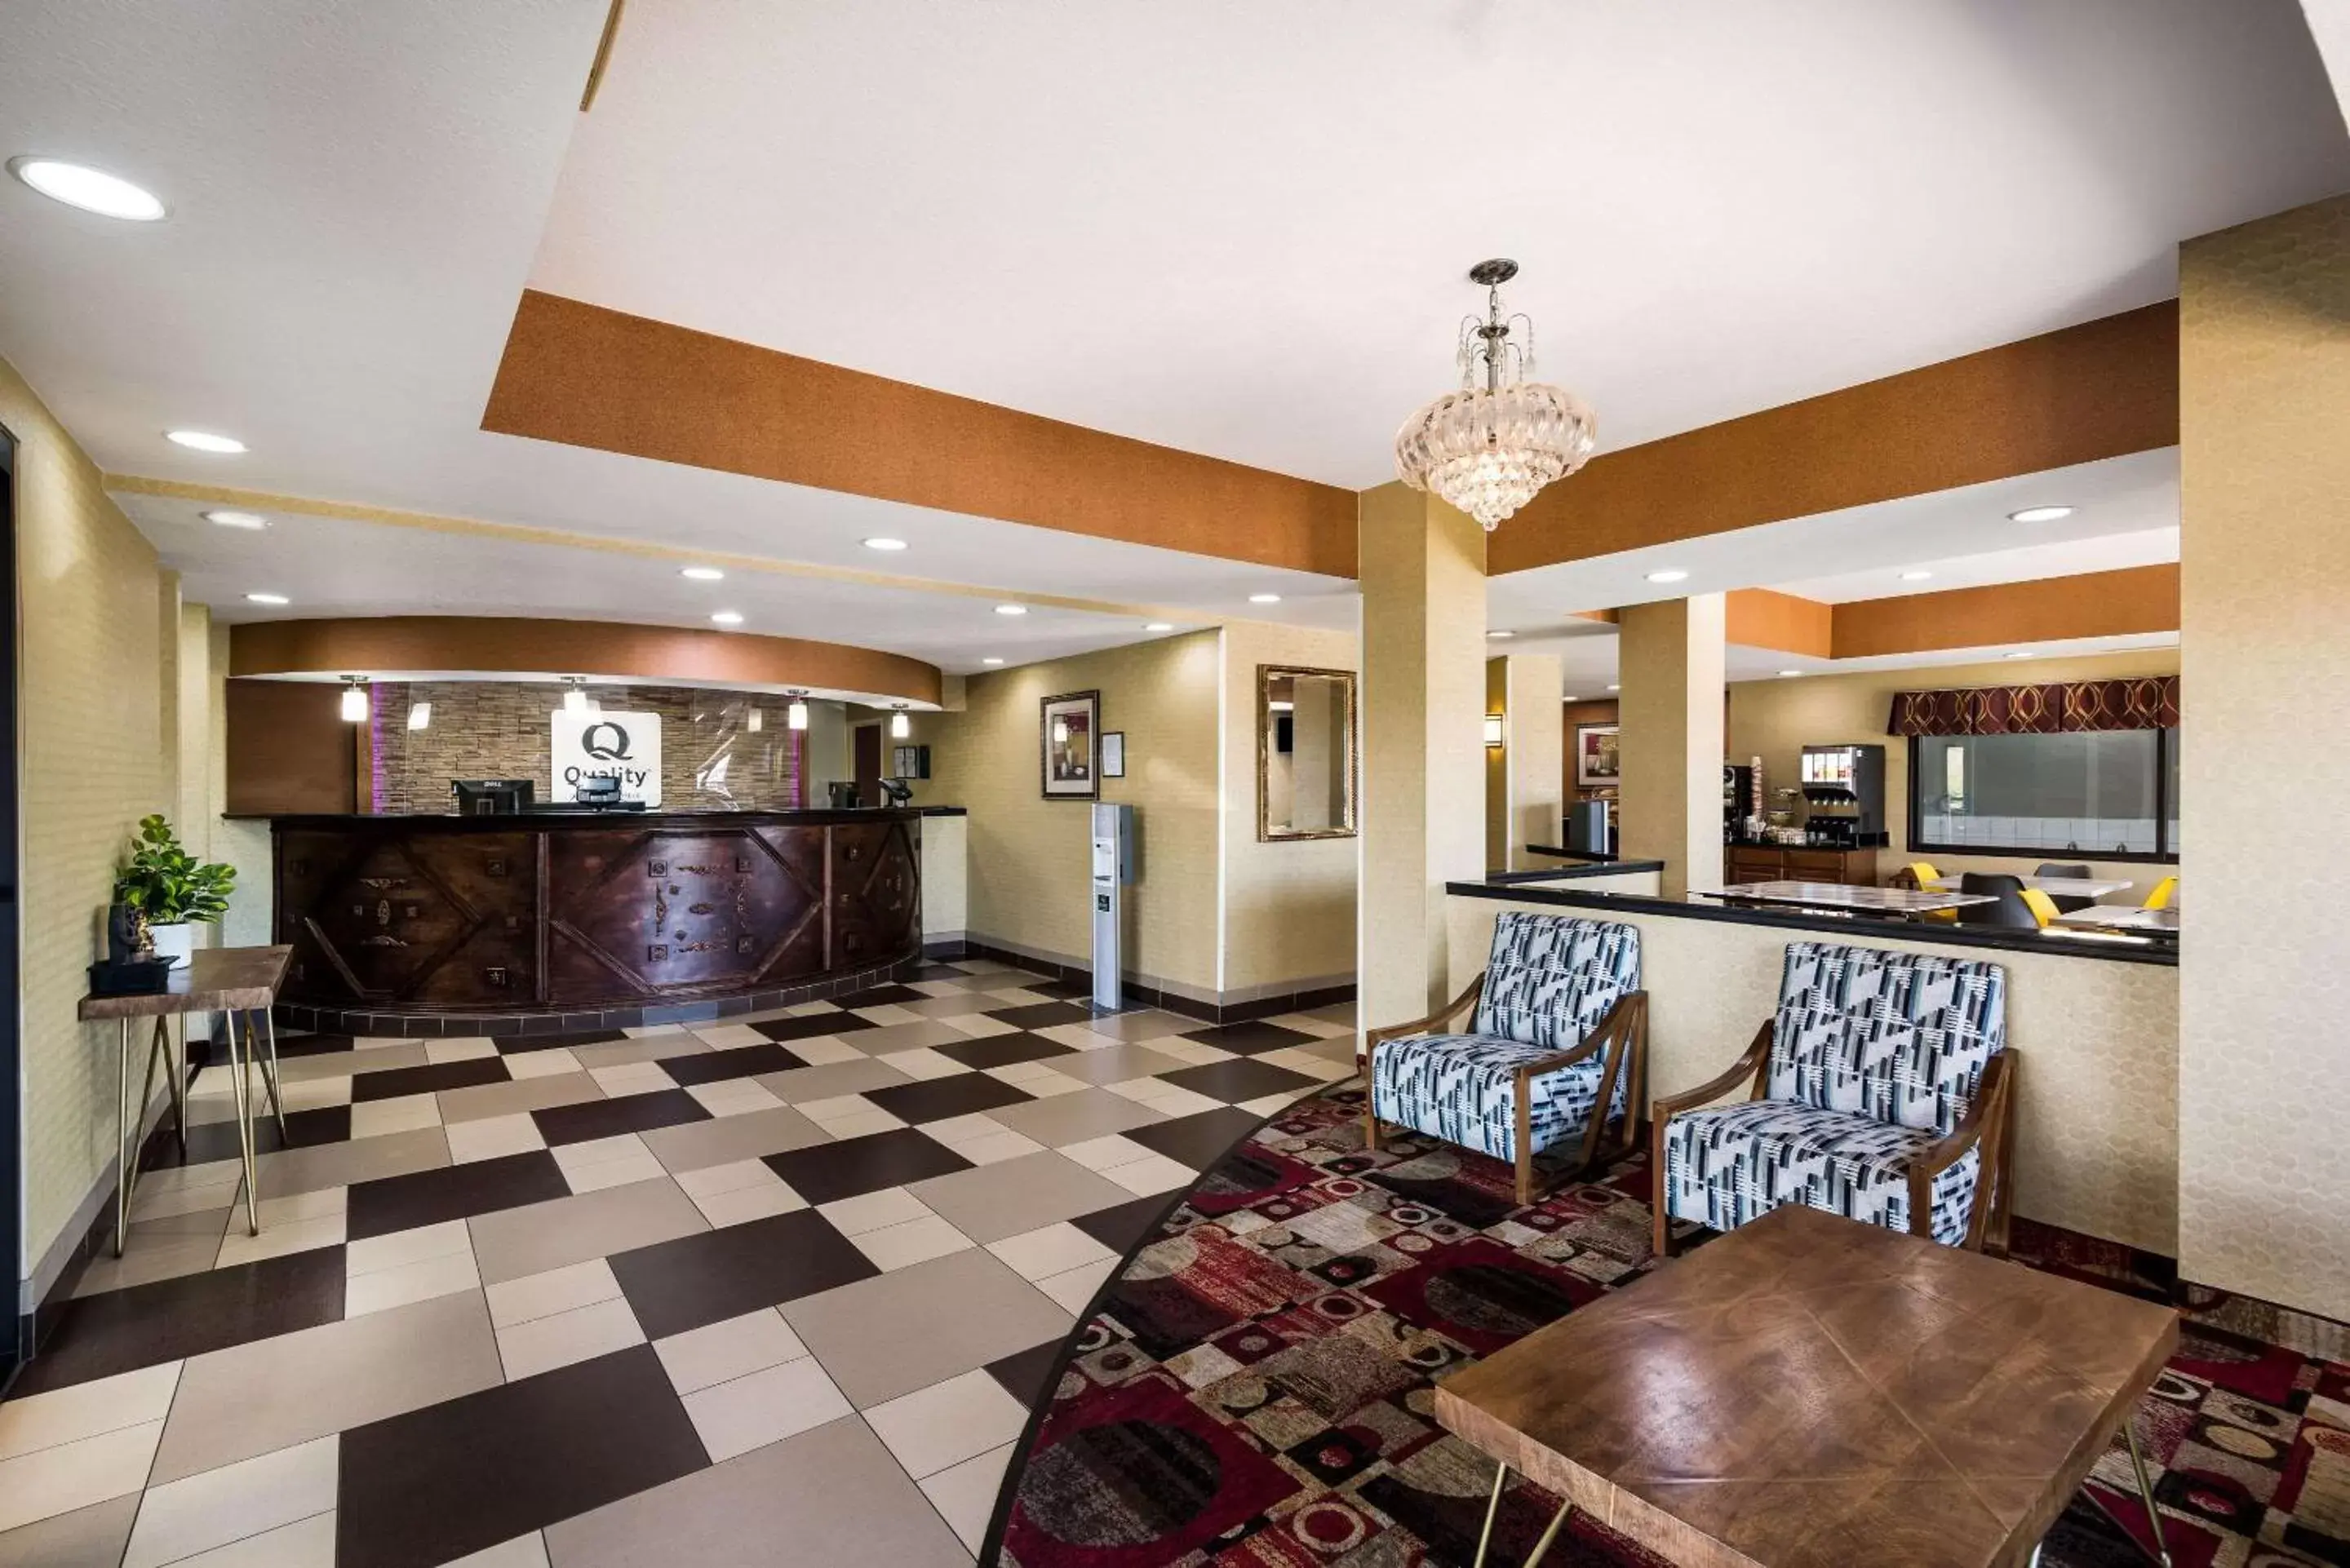 Lobby or reception in Quality Inn